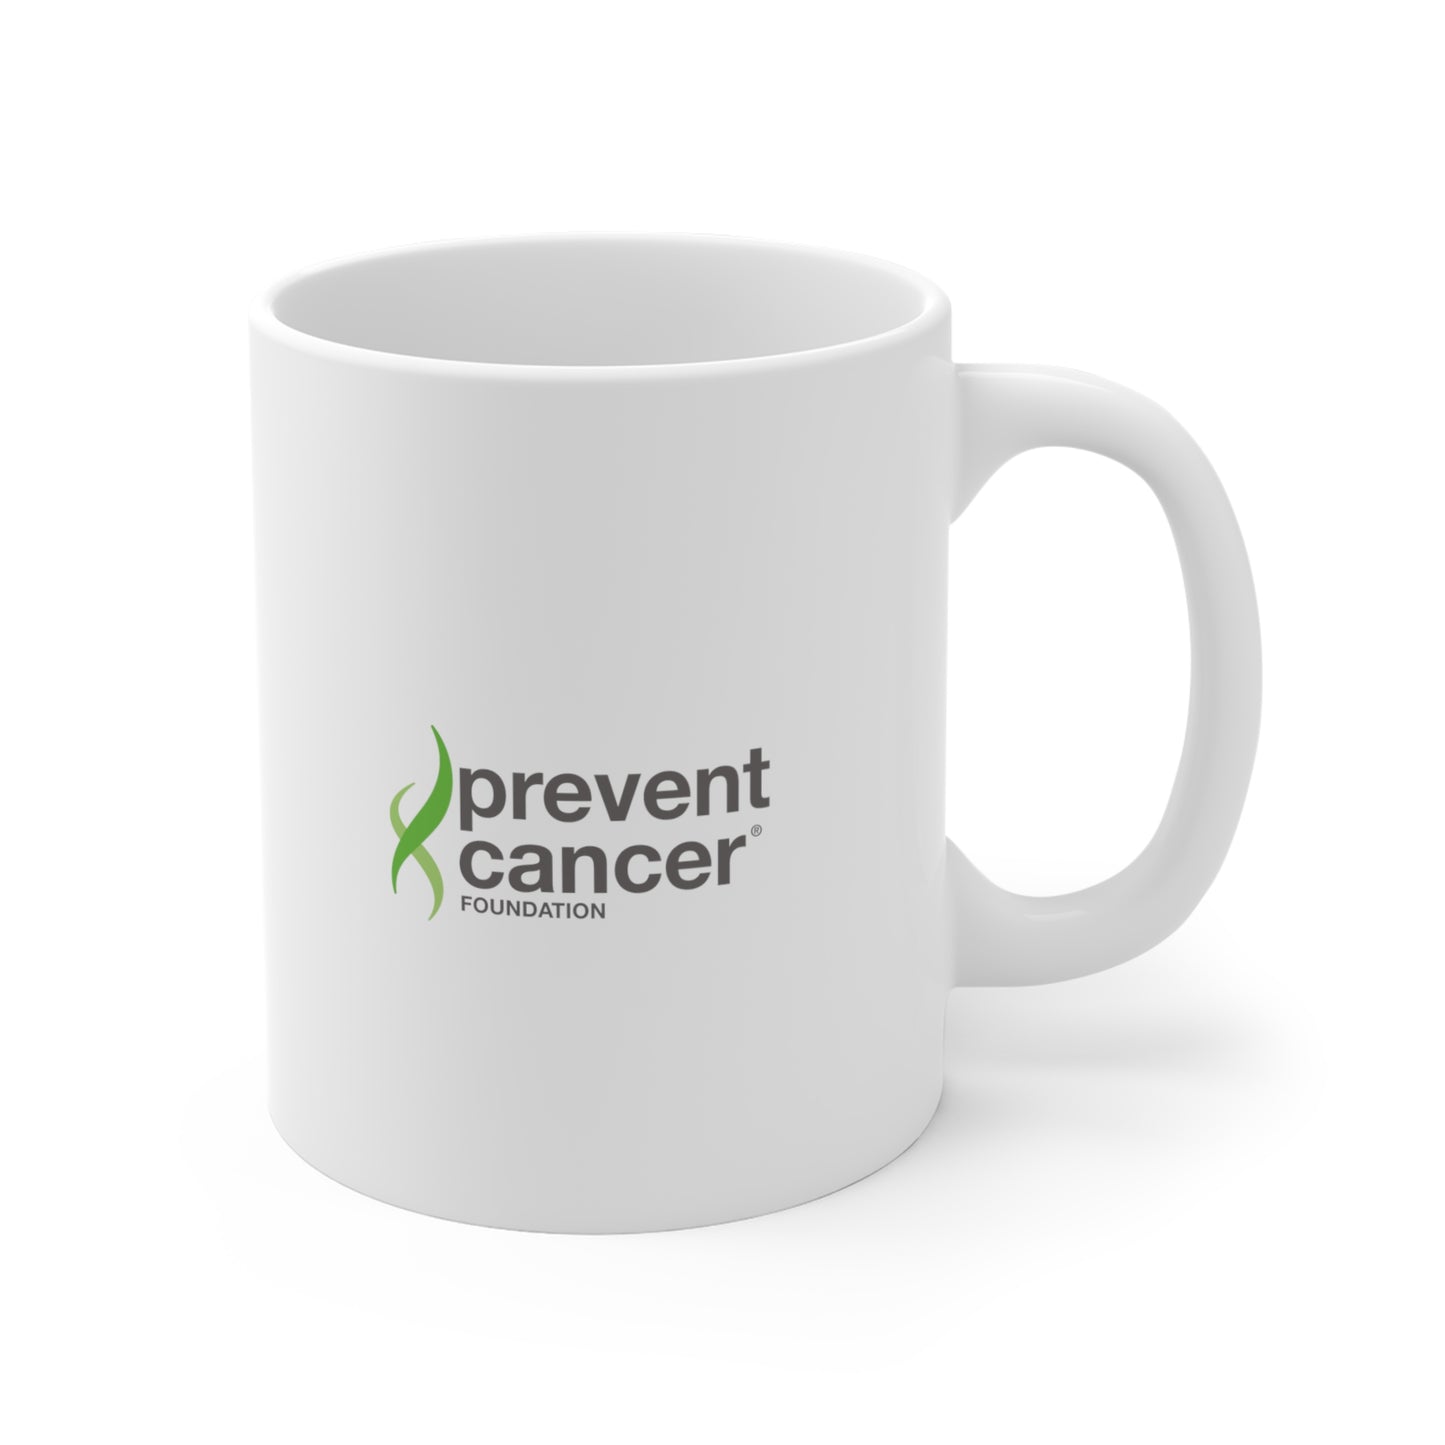 Prevention Premium Mug - Prevent Cancer